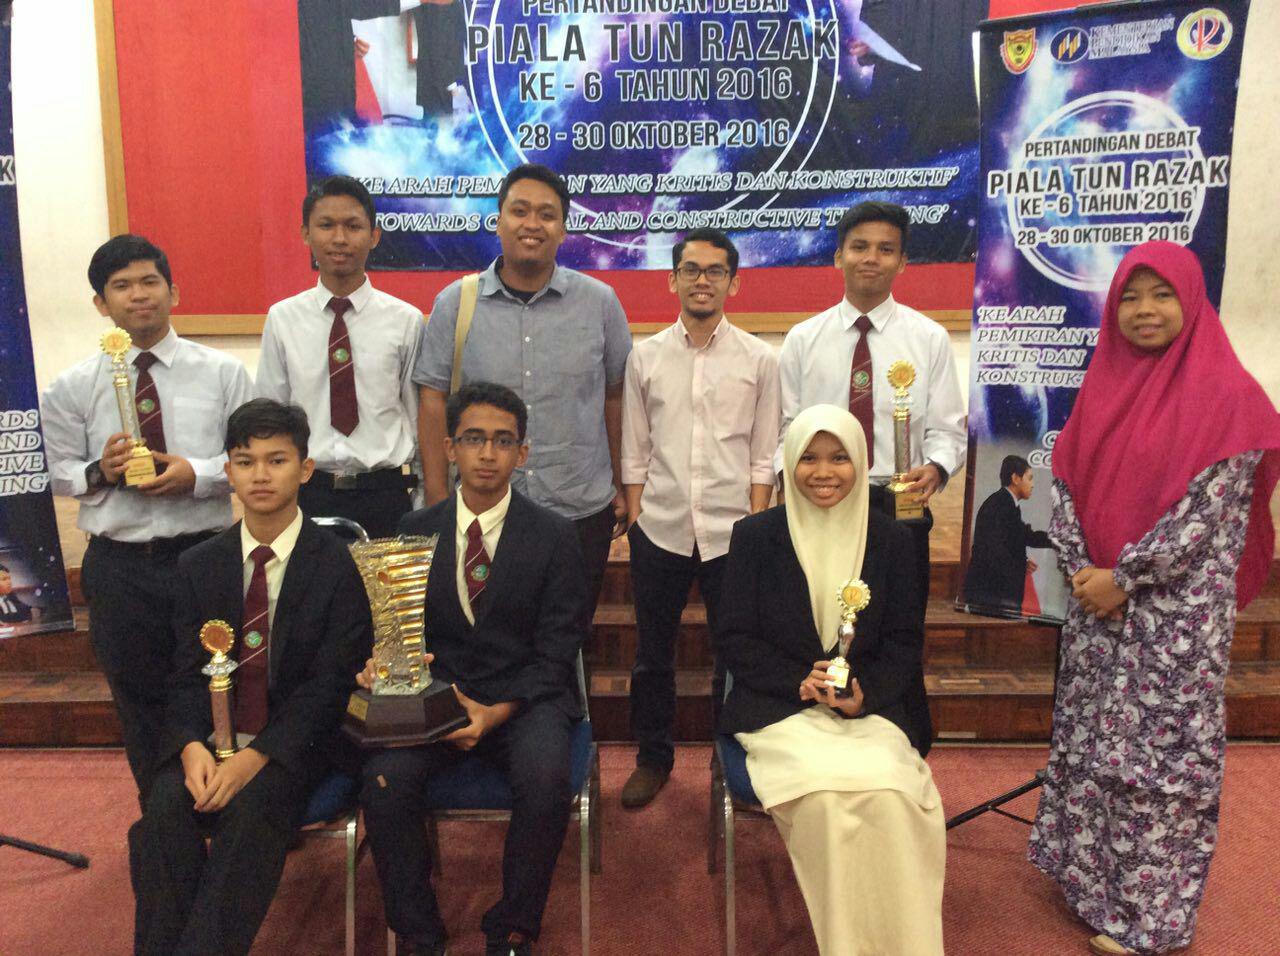 Smih Johor Bahru Johan Debat Bahasa Inggeris Piala Tun Razak 2016 Sekolah Islam Hidayah